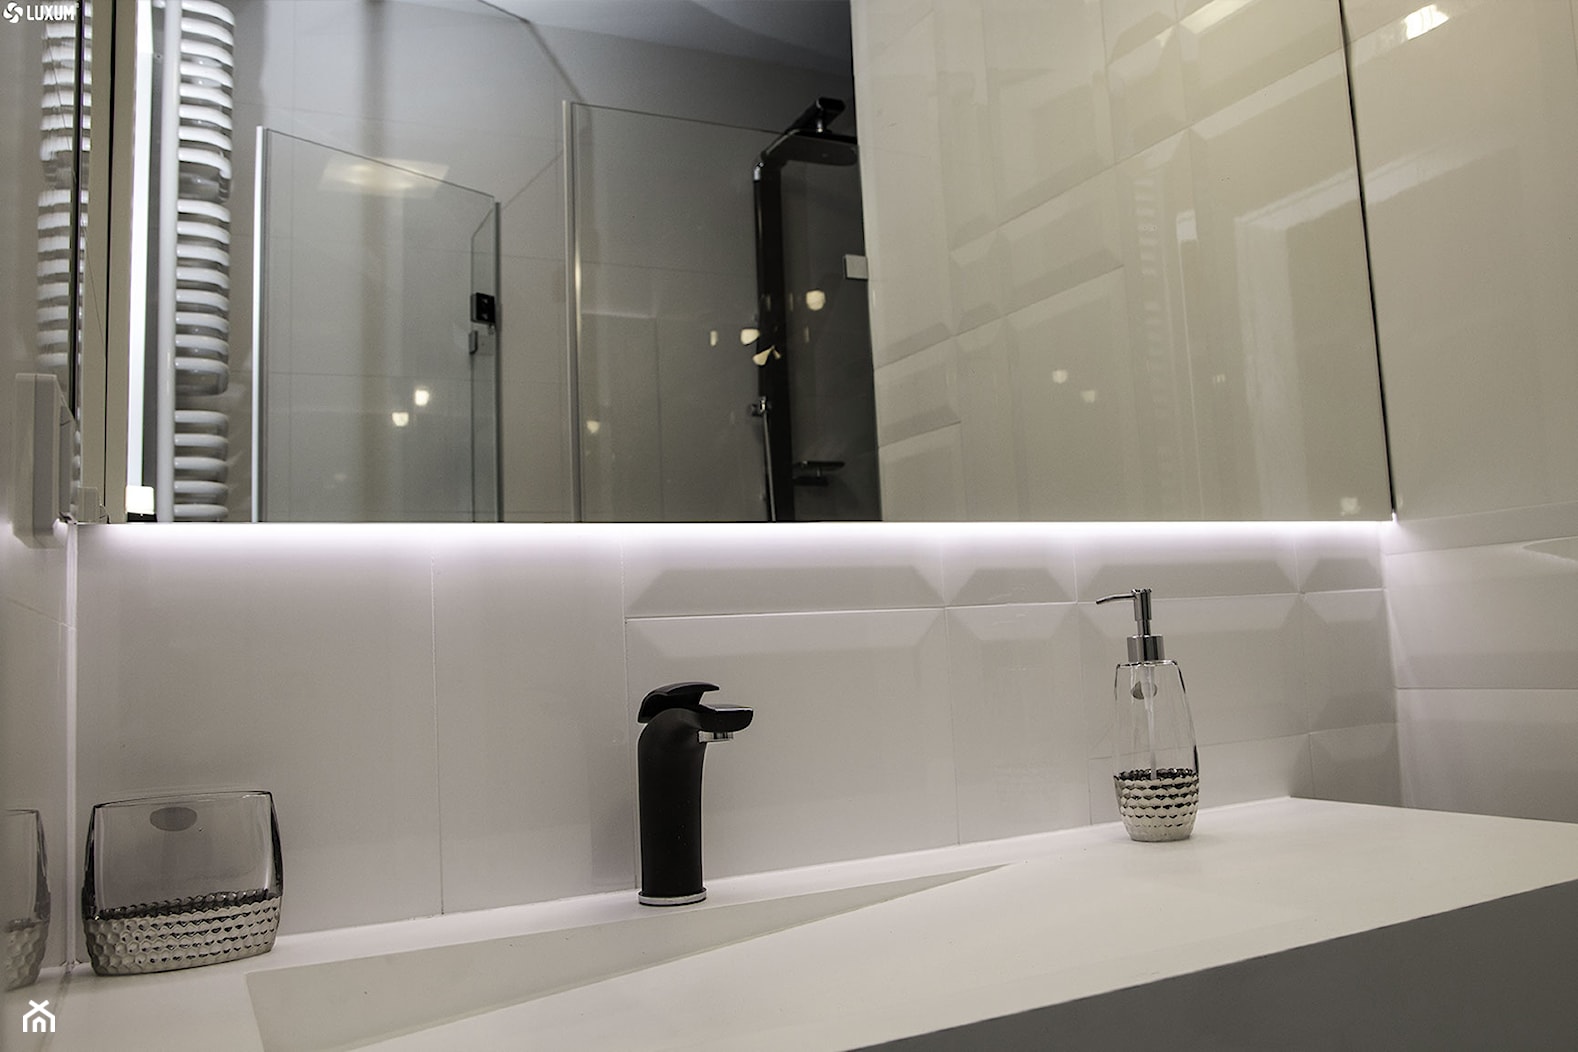 Prostokątna umywalka z odpływem liniowym od Luxum. - Mała łazienka, styl skandynawski - zdjęcie od Luxum - Homebook